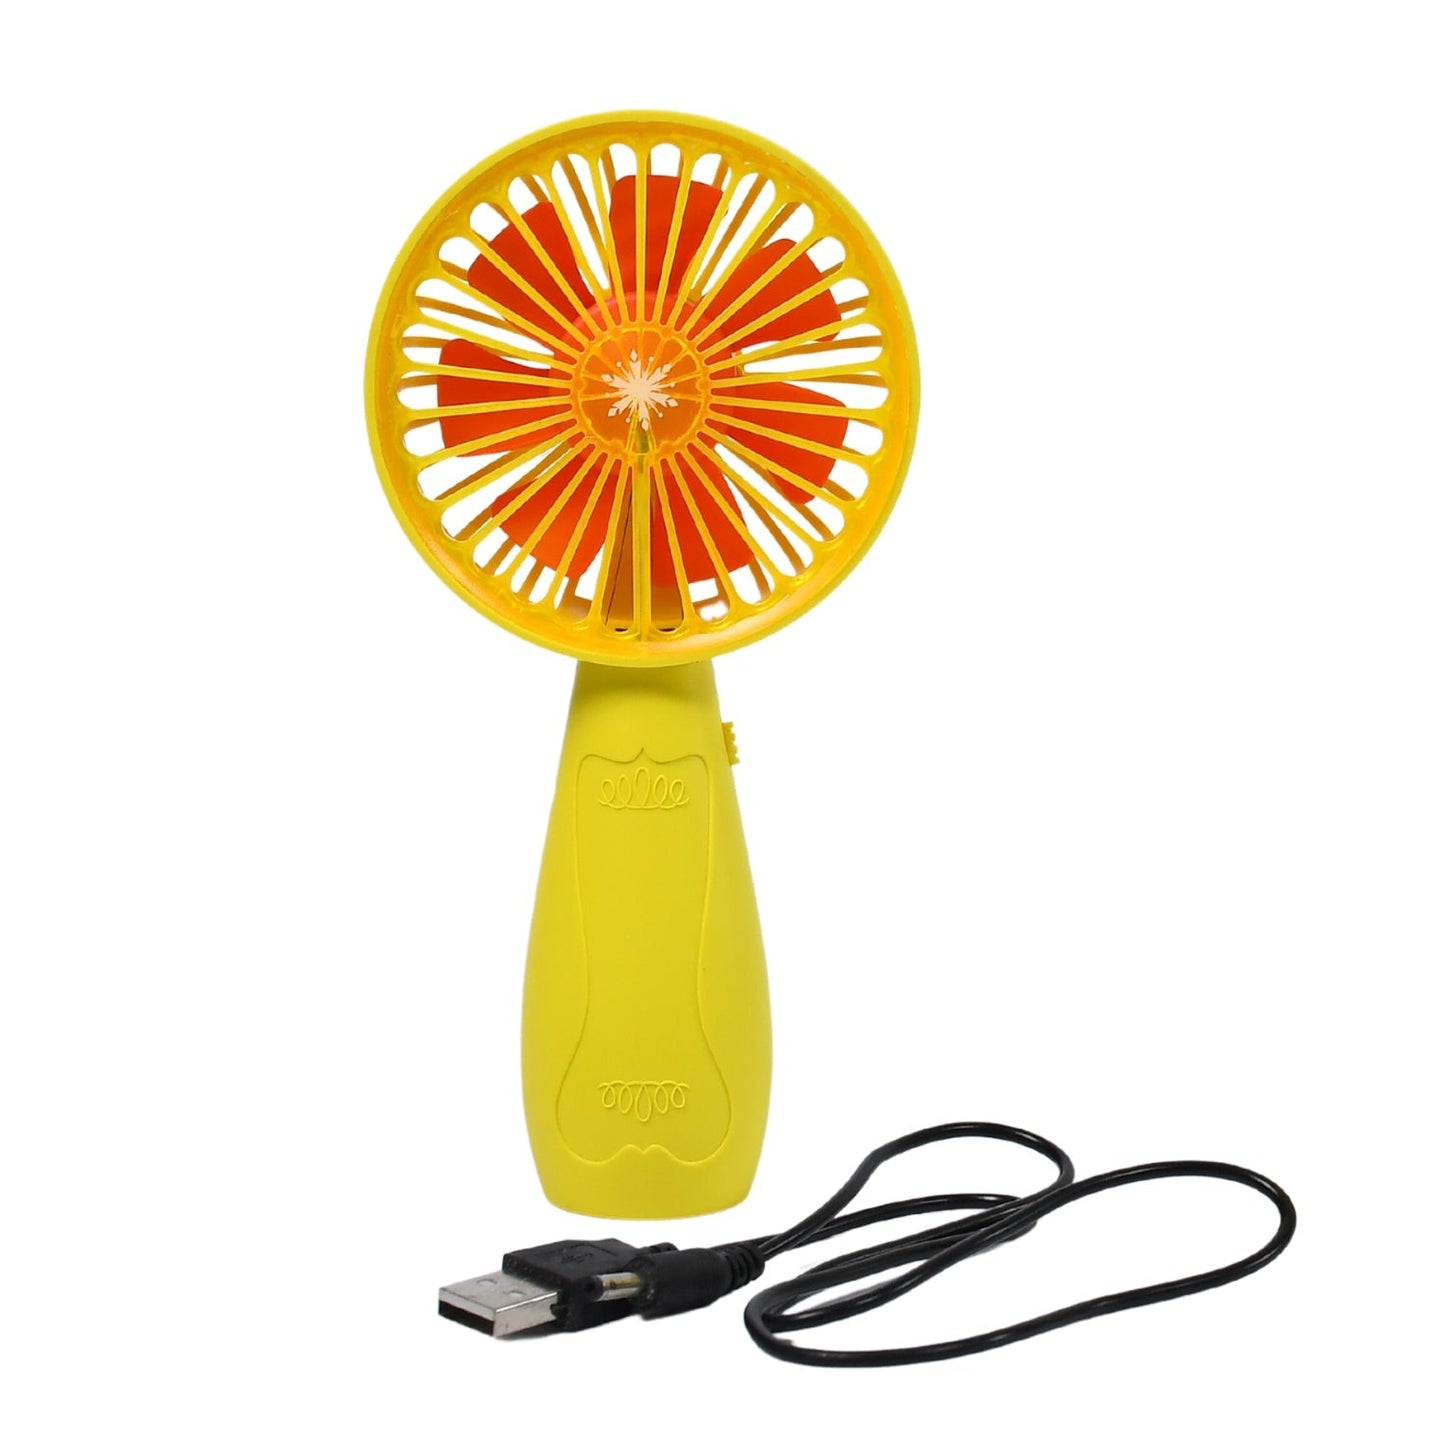 7605 Foldable Handy Light Fans Rechargeable Handheld Mini Fan Electric Personal Fans Hand Bar Desktop Fan JK Trends